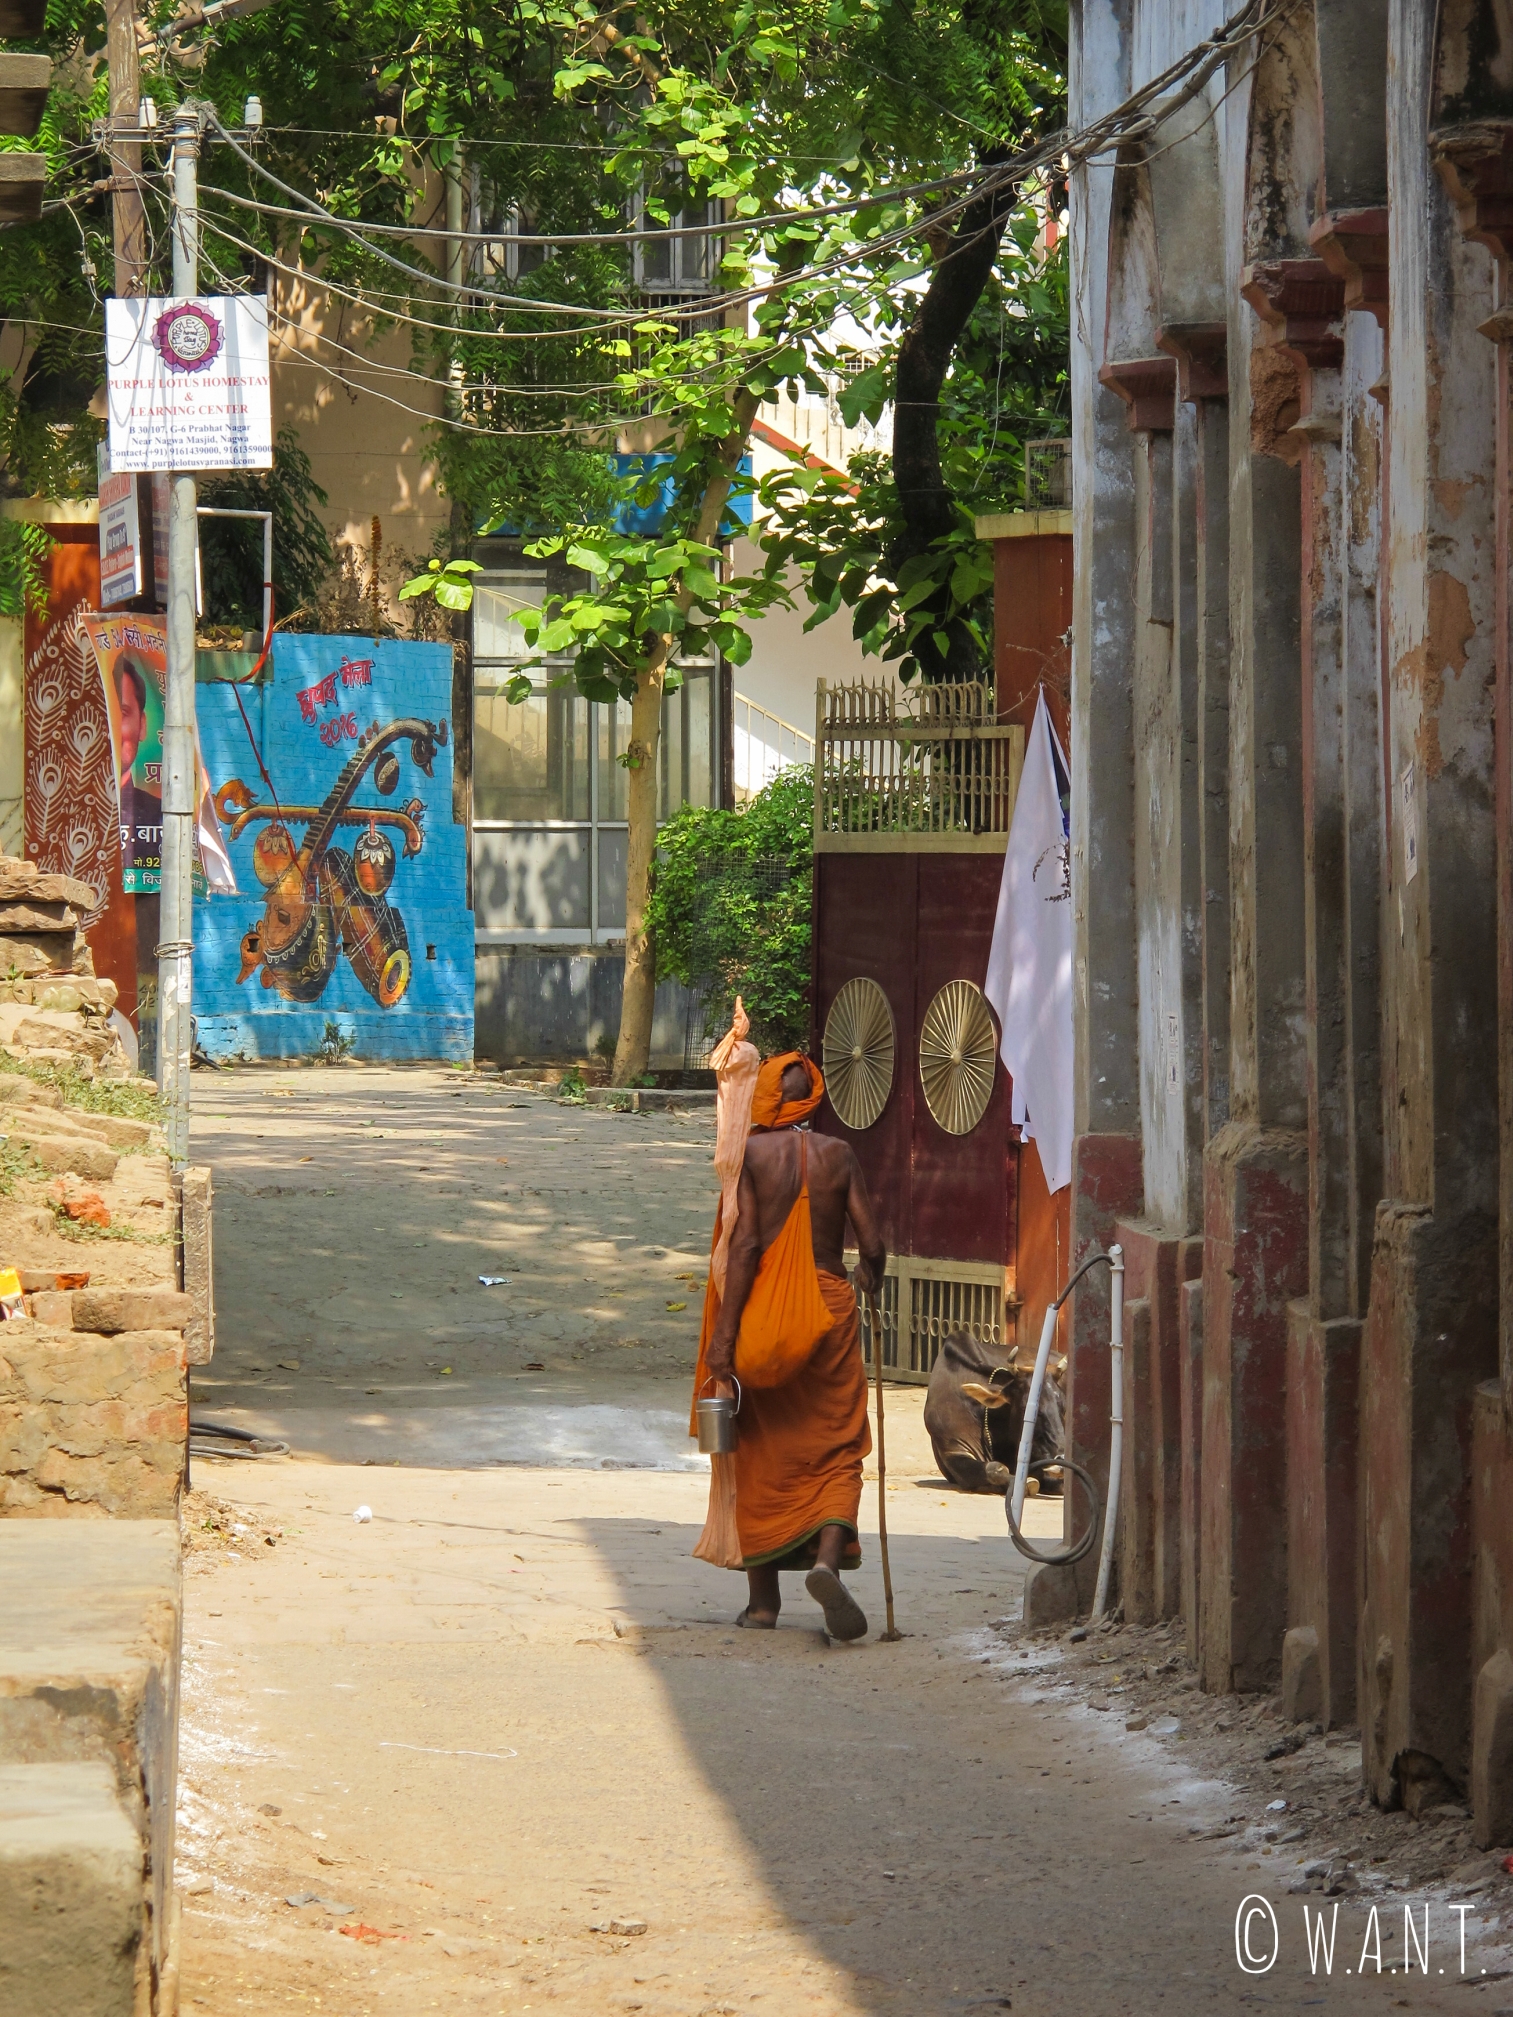 Sadhu, saint homme toujours vêtu de orange, marchant à l'ombre dans la rue